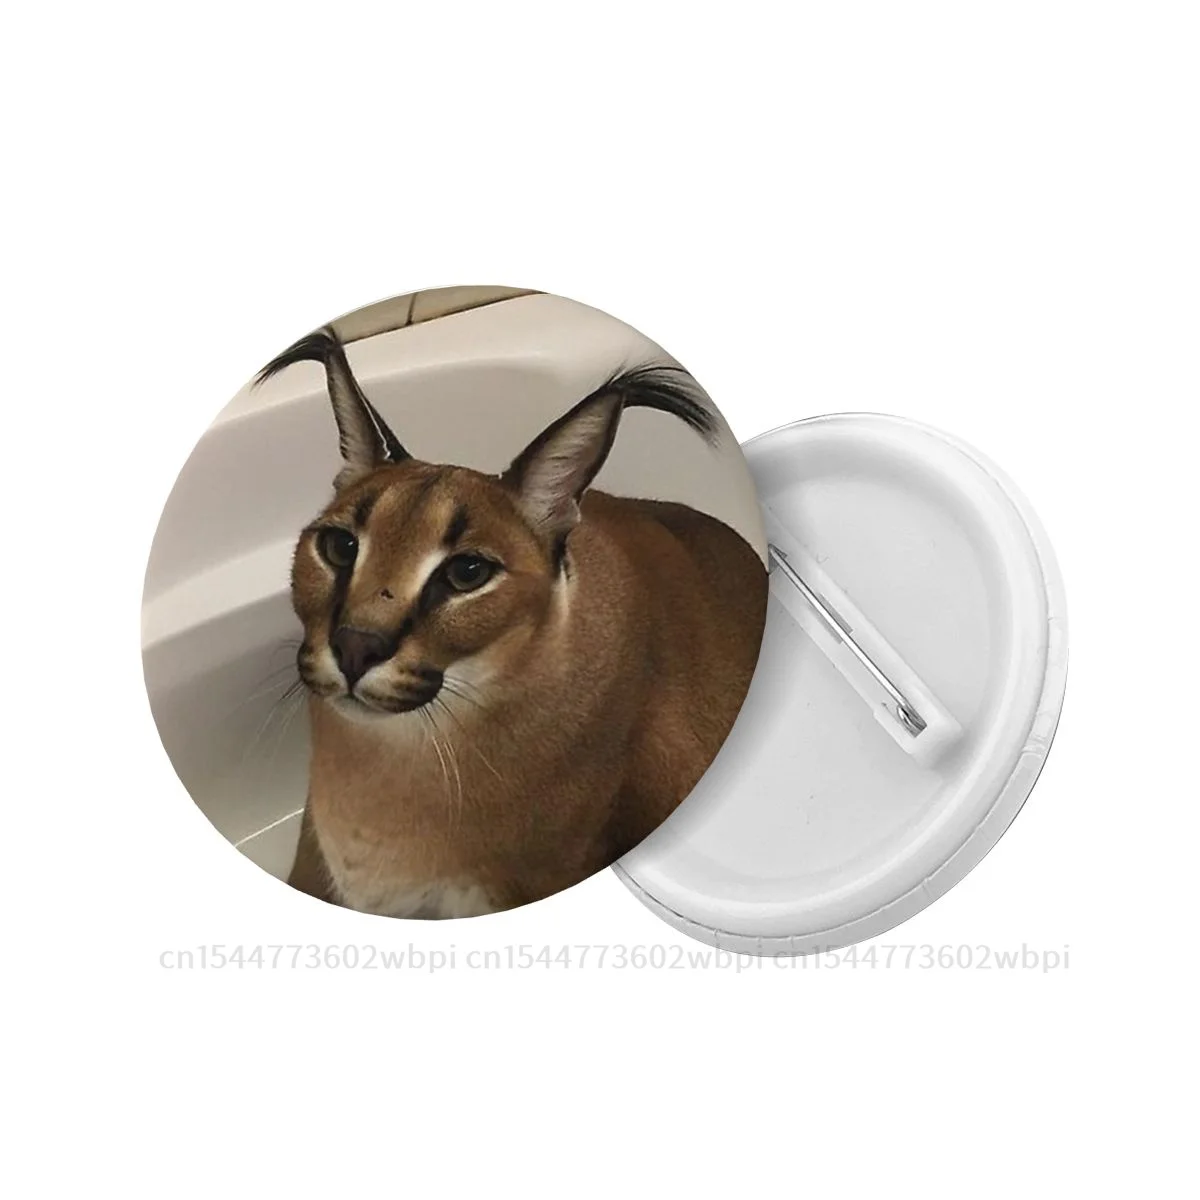  Cutest Bathtub Big Floppa My Beloved Caracal Cat Meme